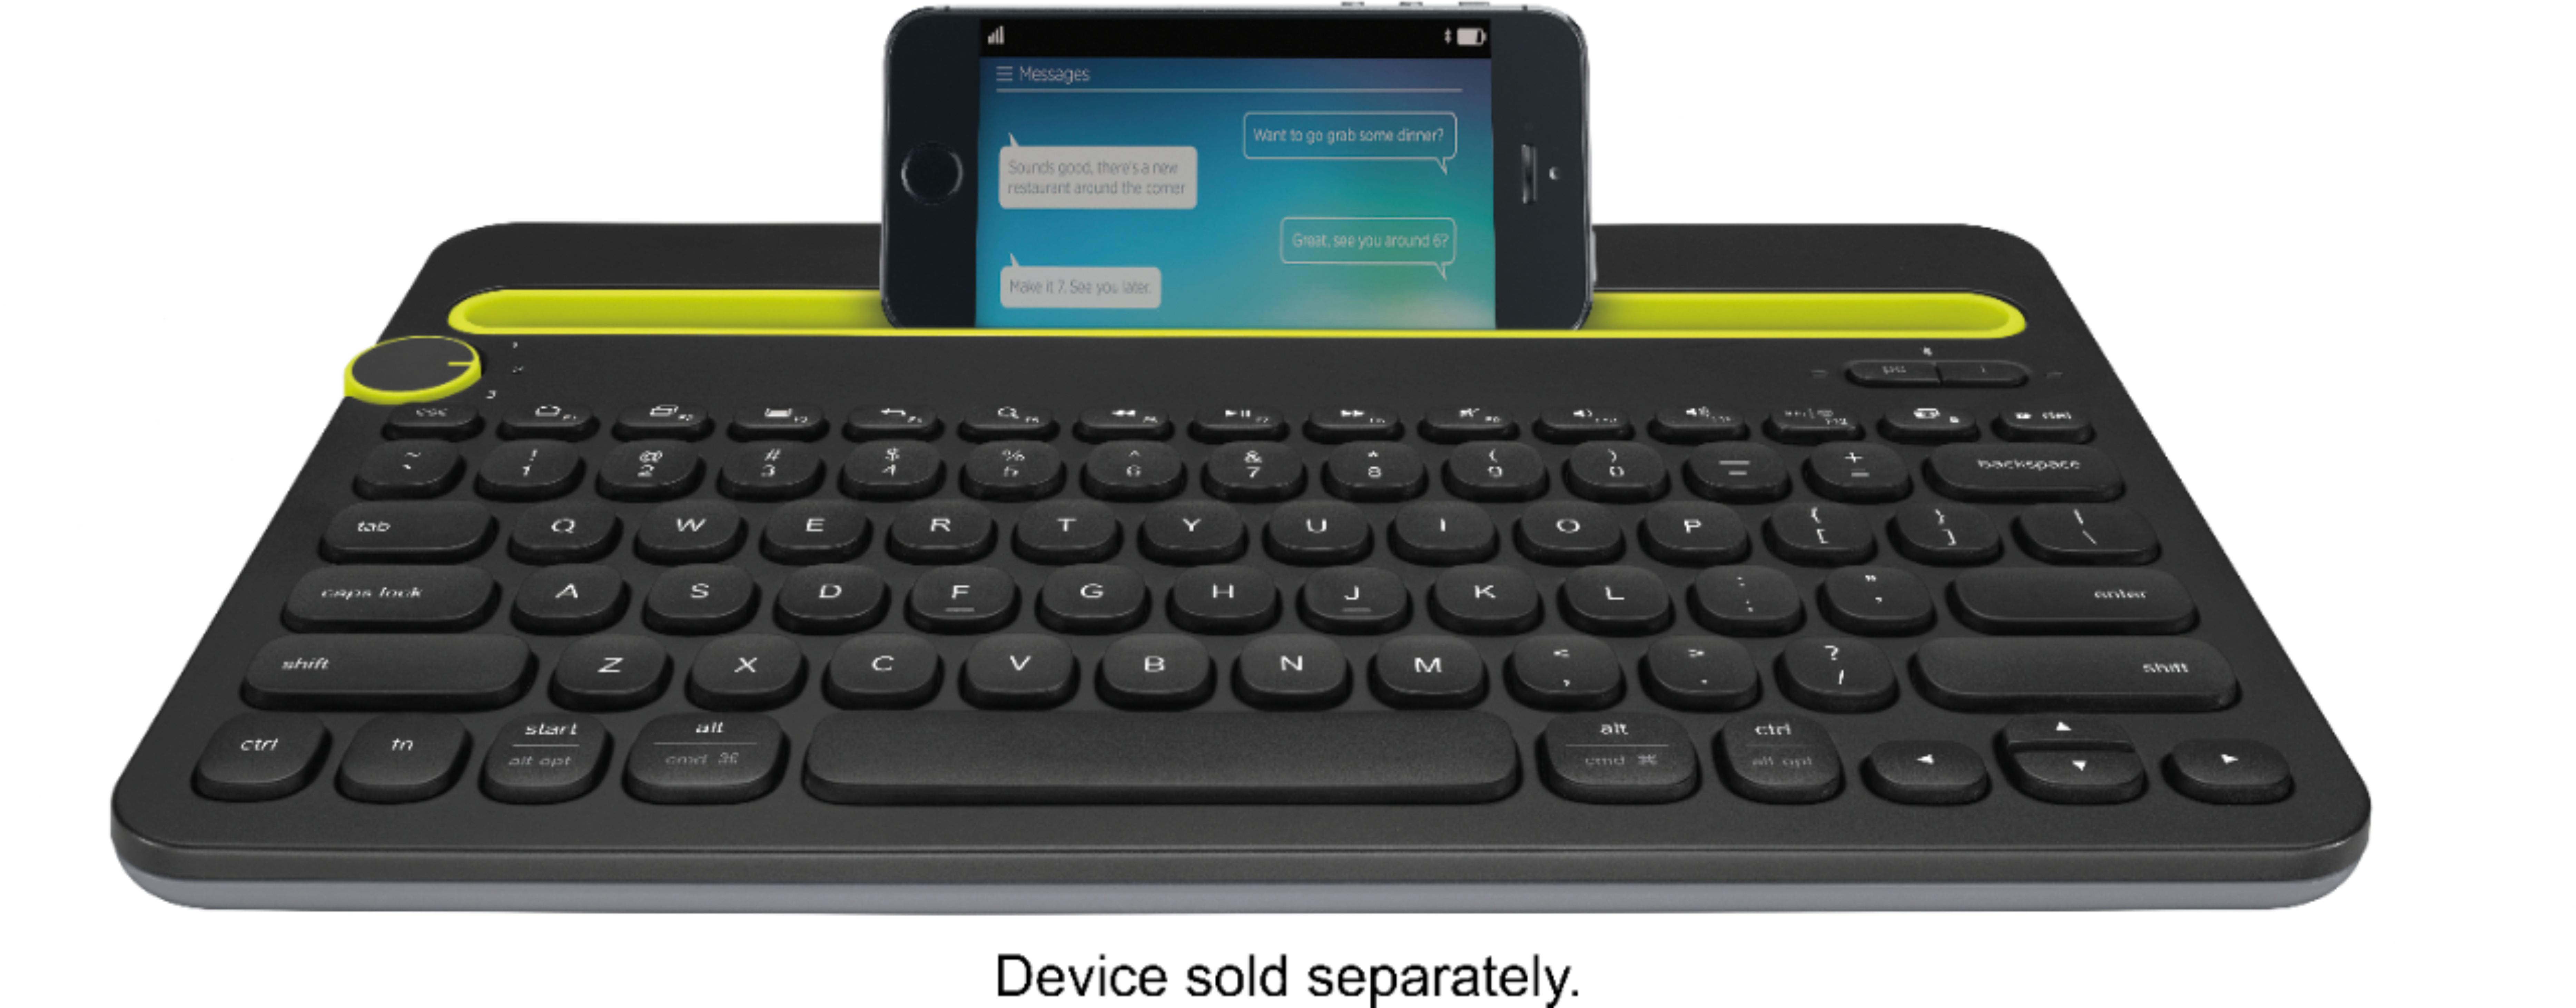 Logitech K480 Bluetooth Multidevice Keyboard Black 9 Best Buy